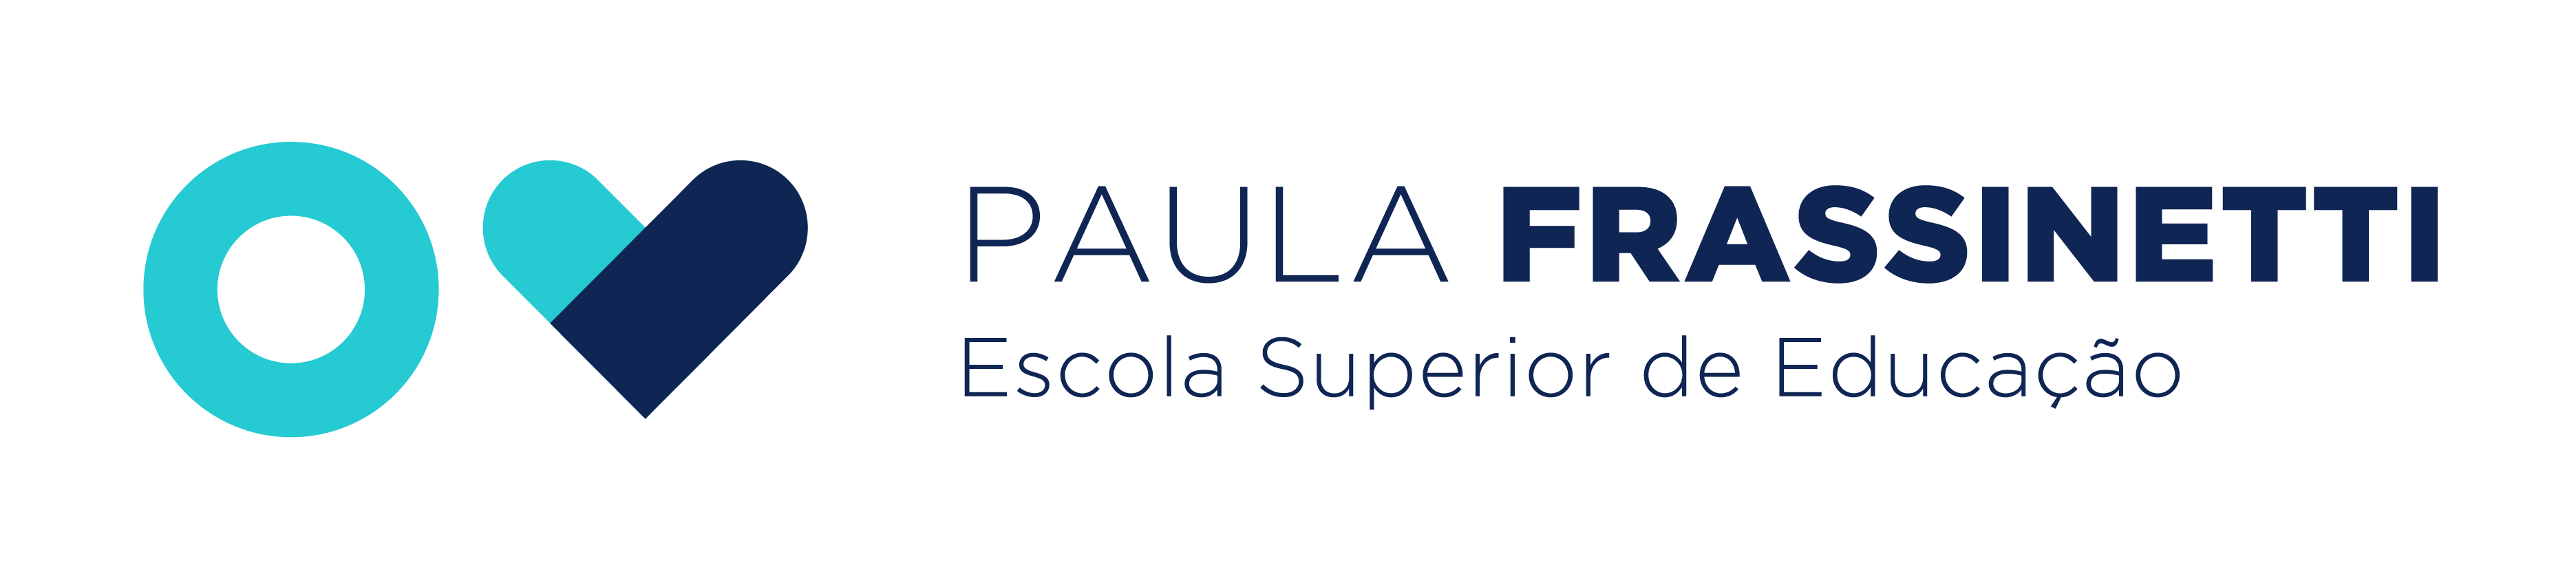 Escola Superior de Educação de Paula Frassinetti